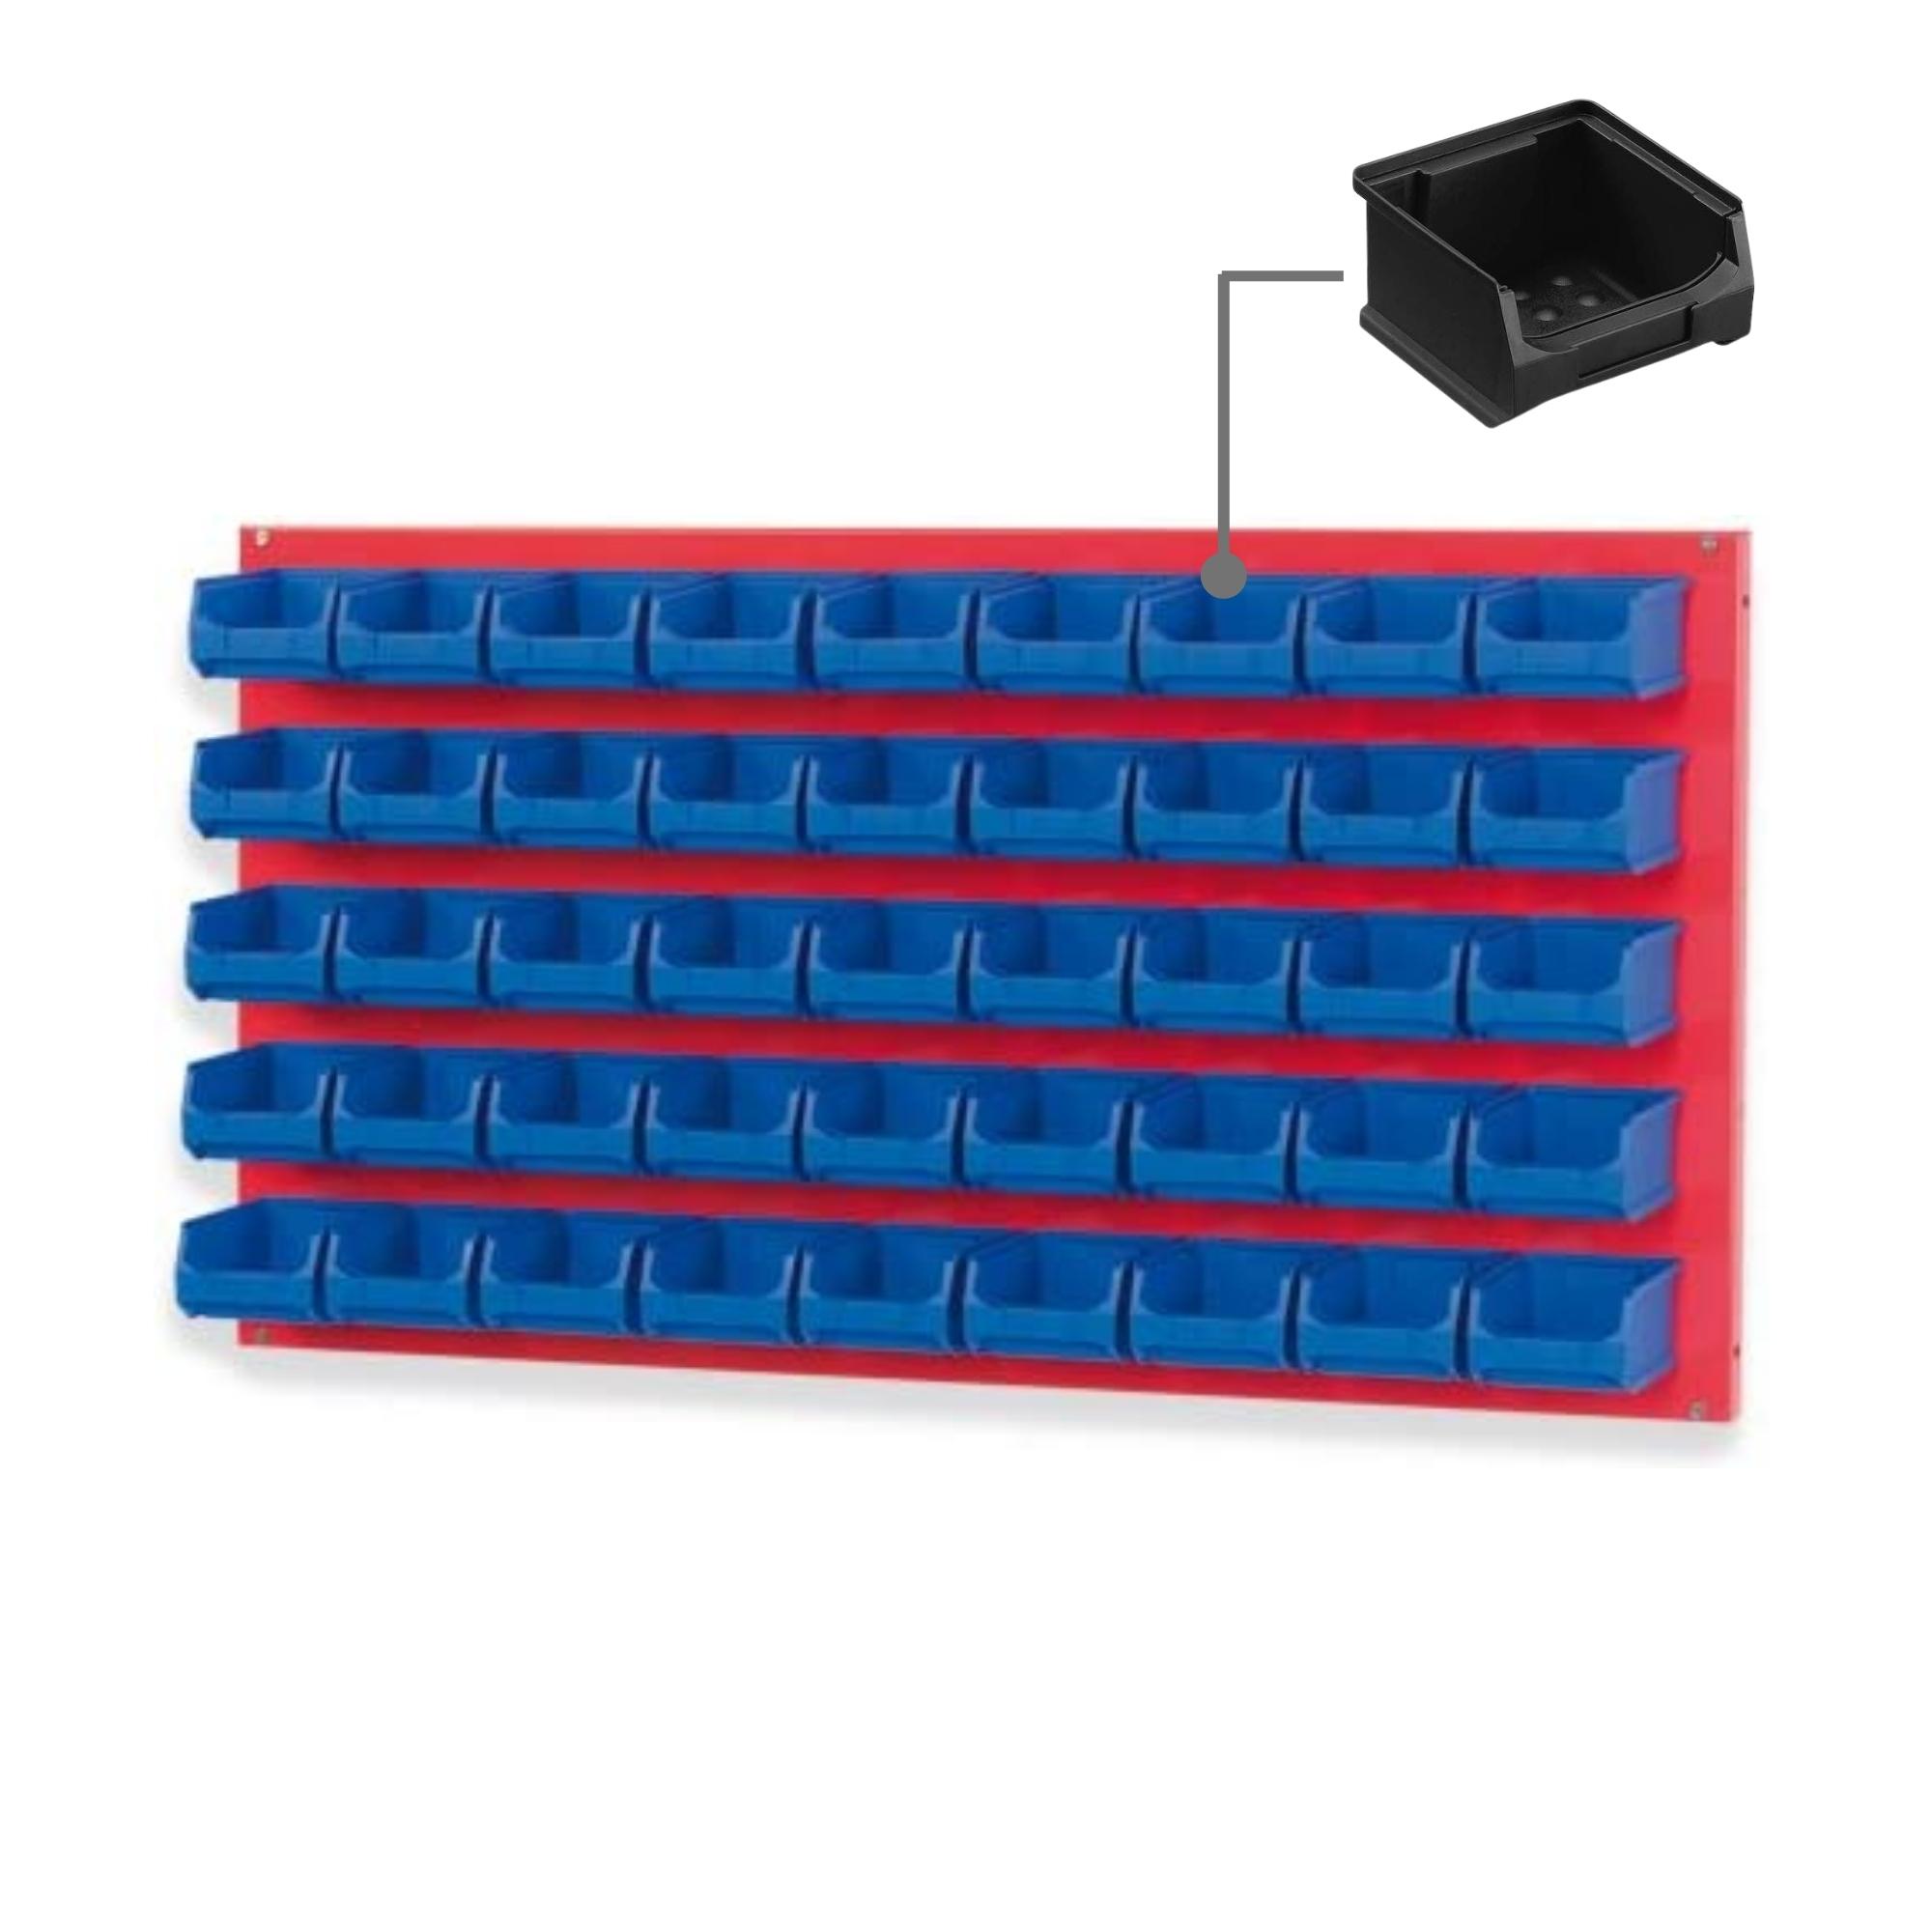 Trägersystem Rote Systemplatte mit 45x leitfähigen Sichtlagerboxen 1.0 | Maße HxB 50x100cm | Sichtlagerbox, Sichtlagerbehälter, Sichtlagerkasten